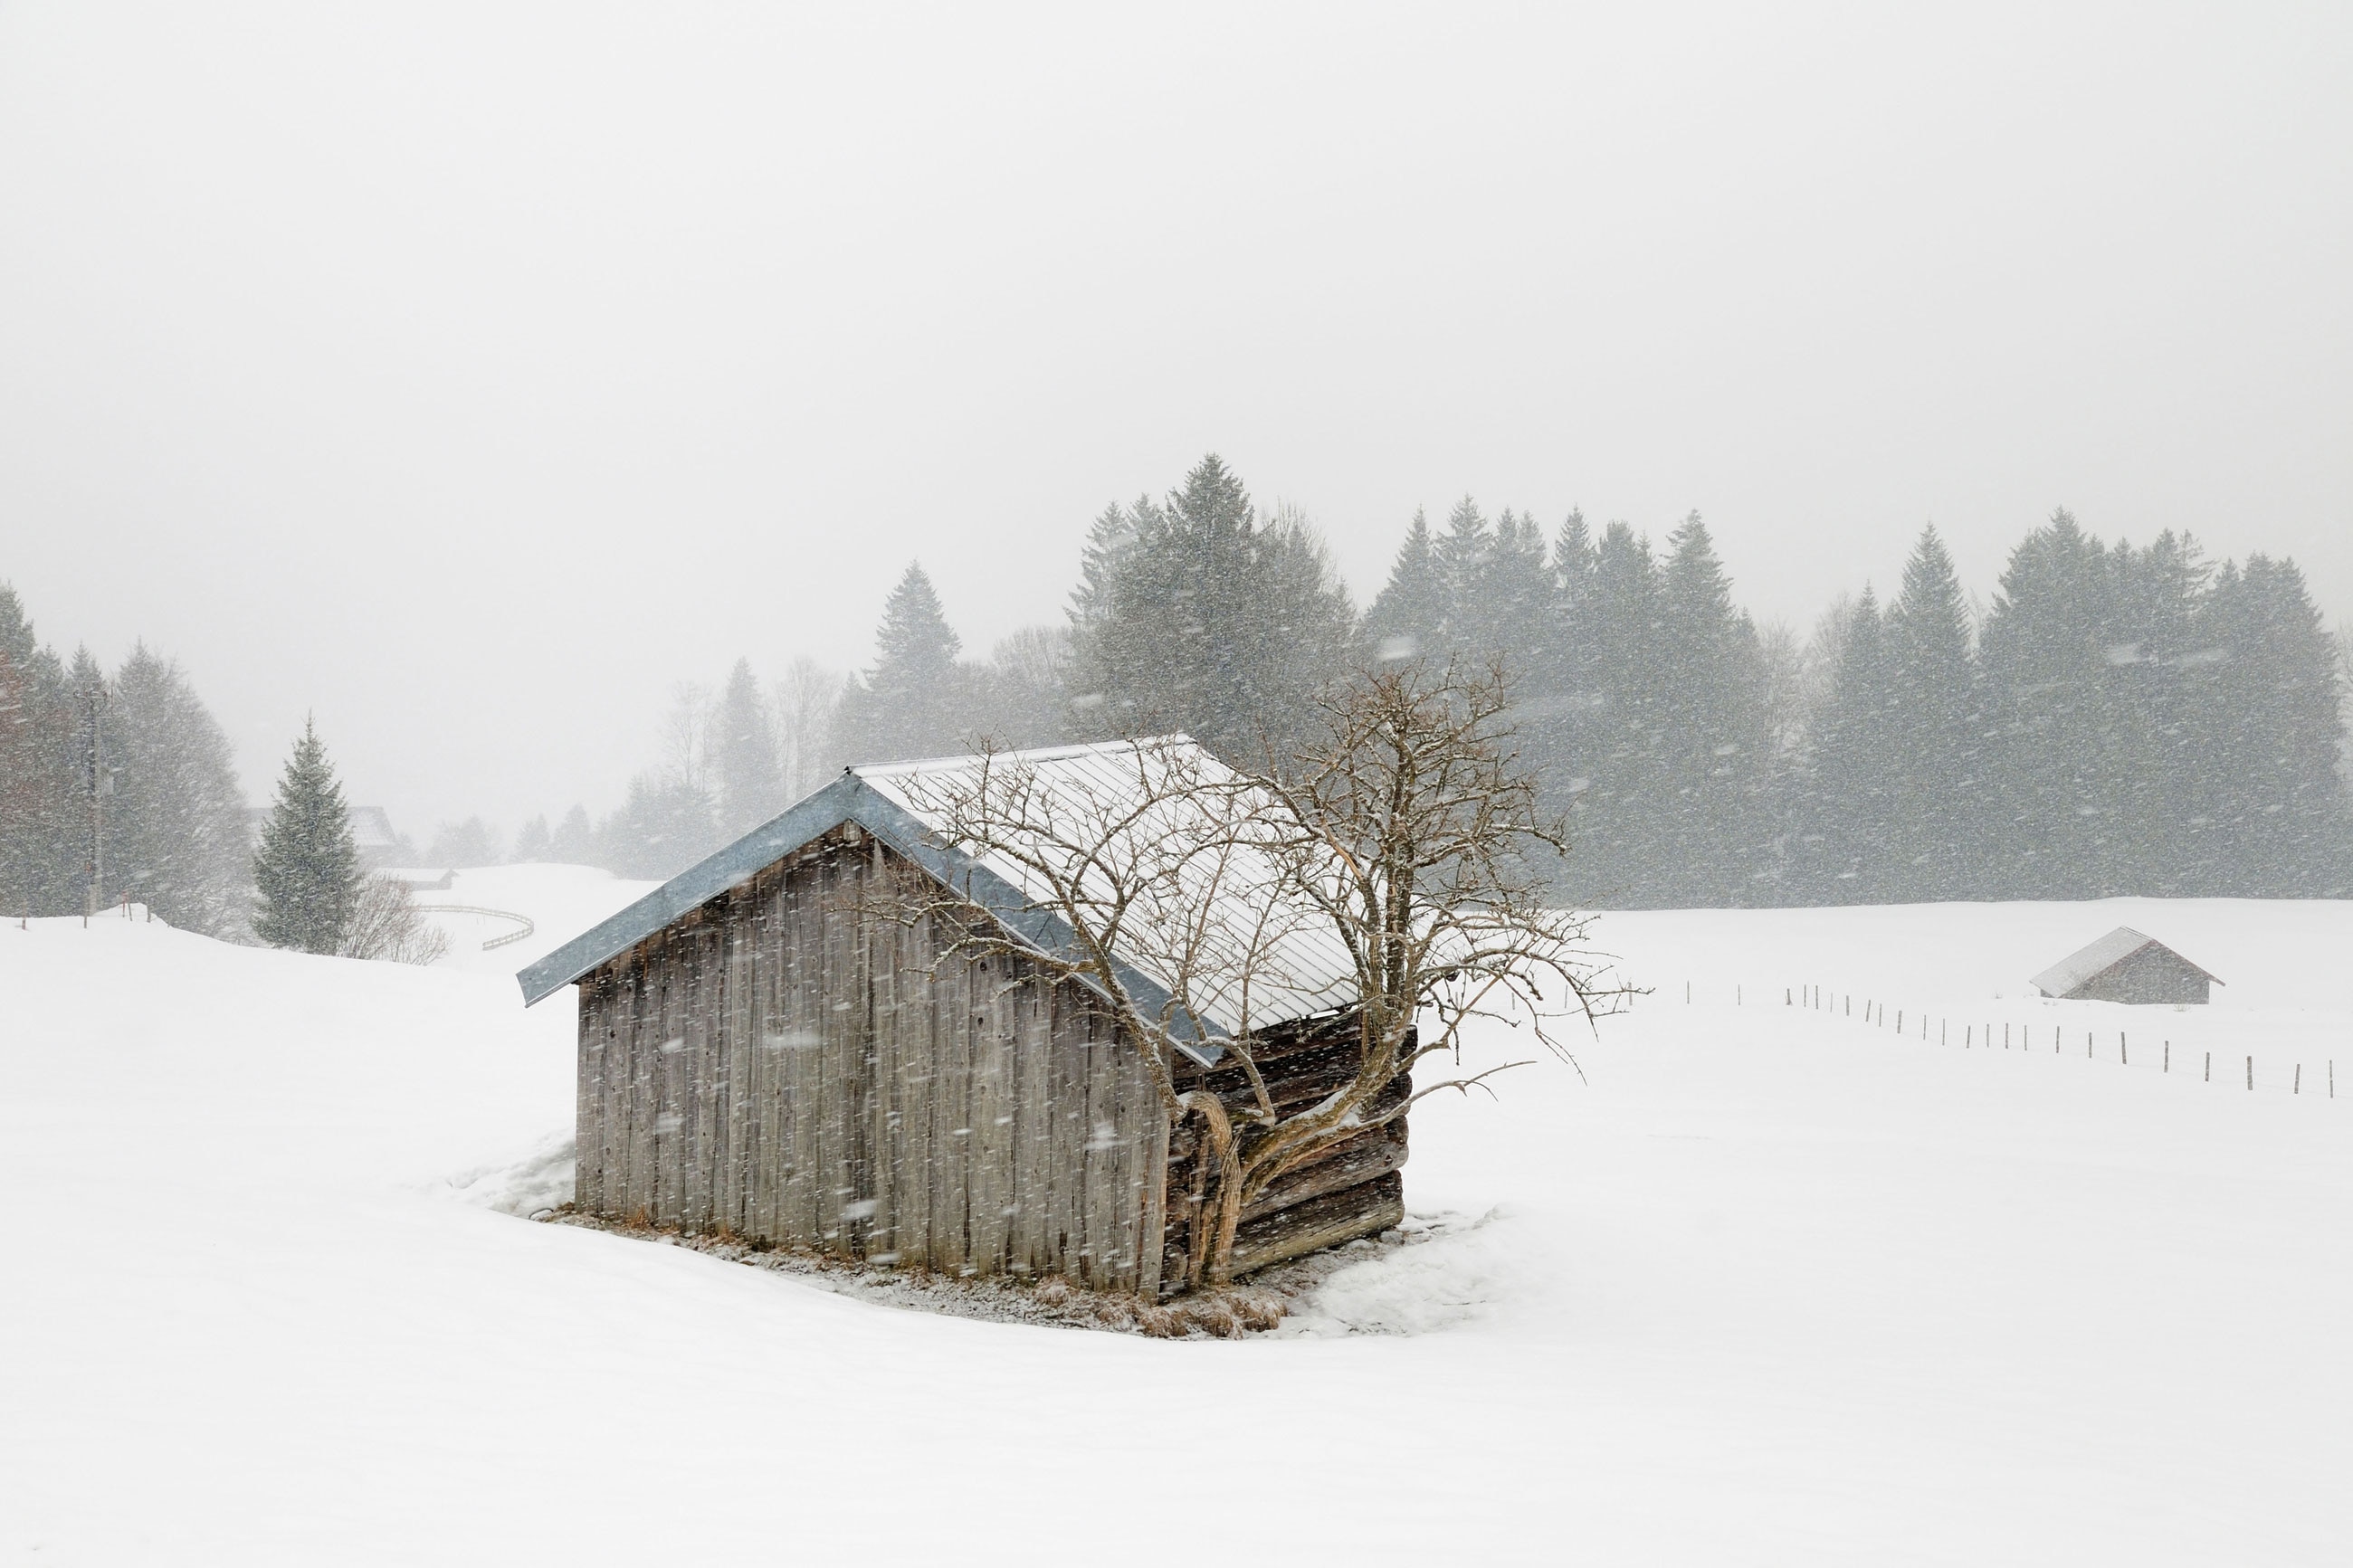 Feucht, kalt und windig wird das Wochenendwetter - entlang der Alpennordseite schneit es immer wieder